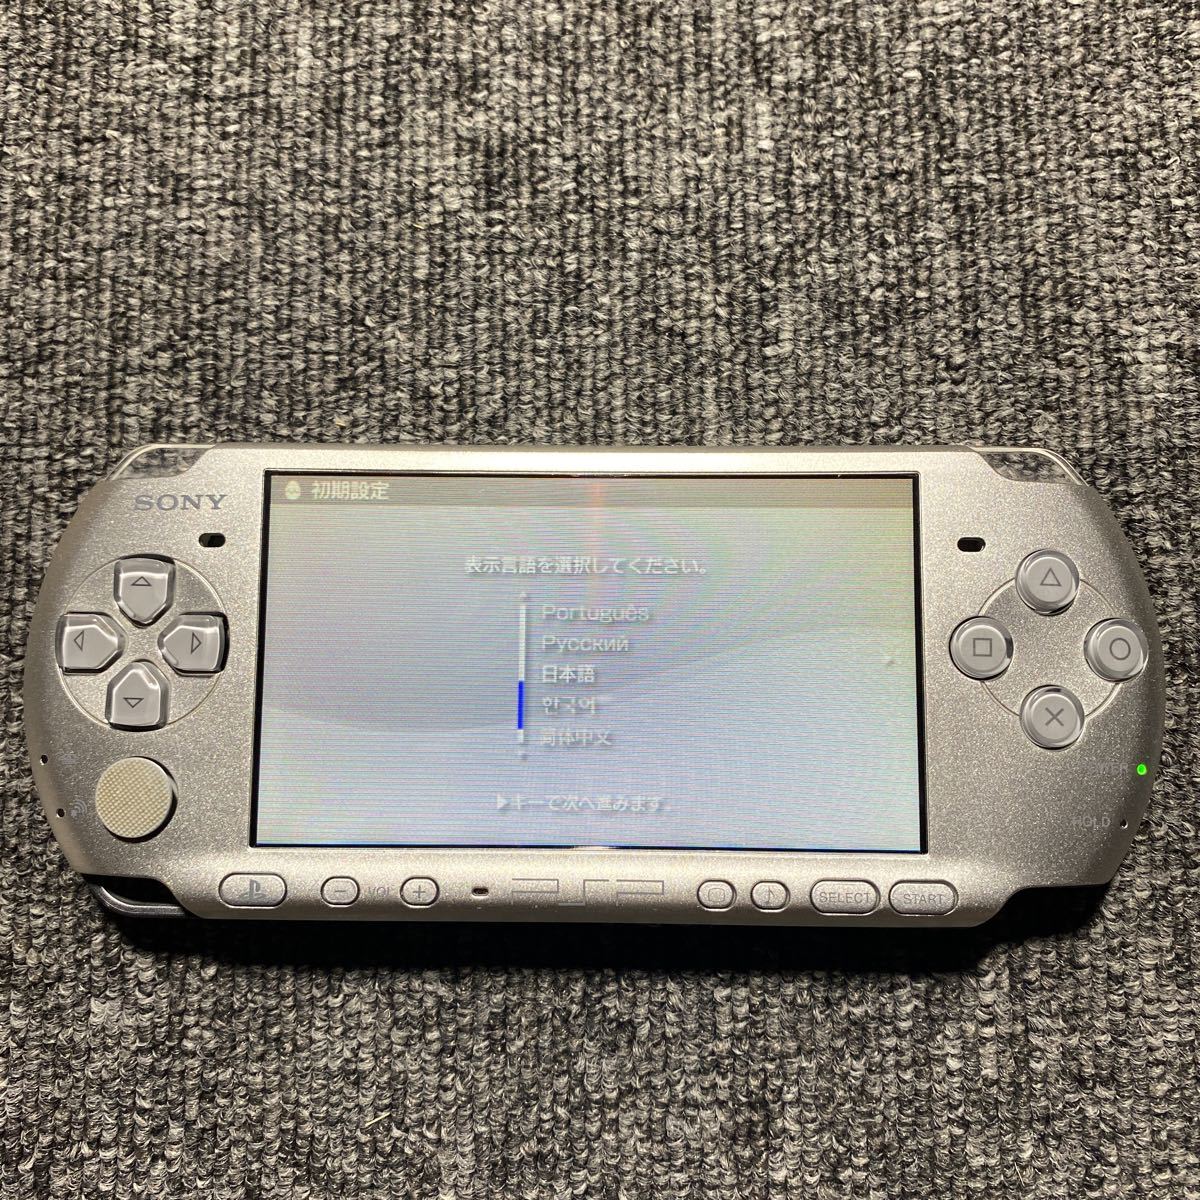 オンライン直販店 プレイステーションポータブル(PSP-3000